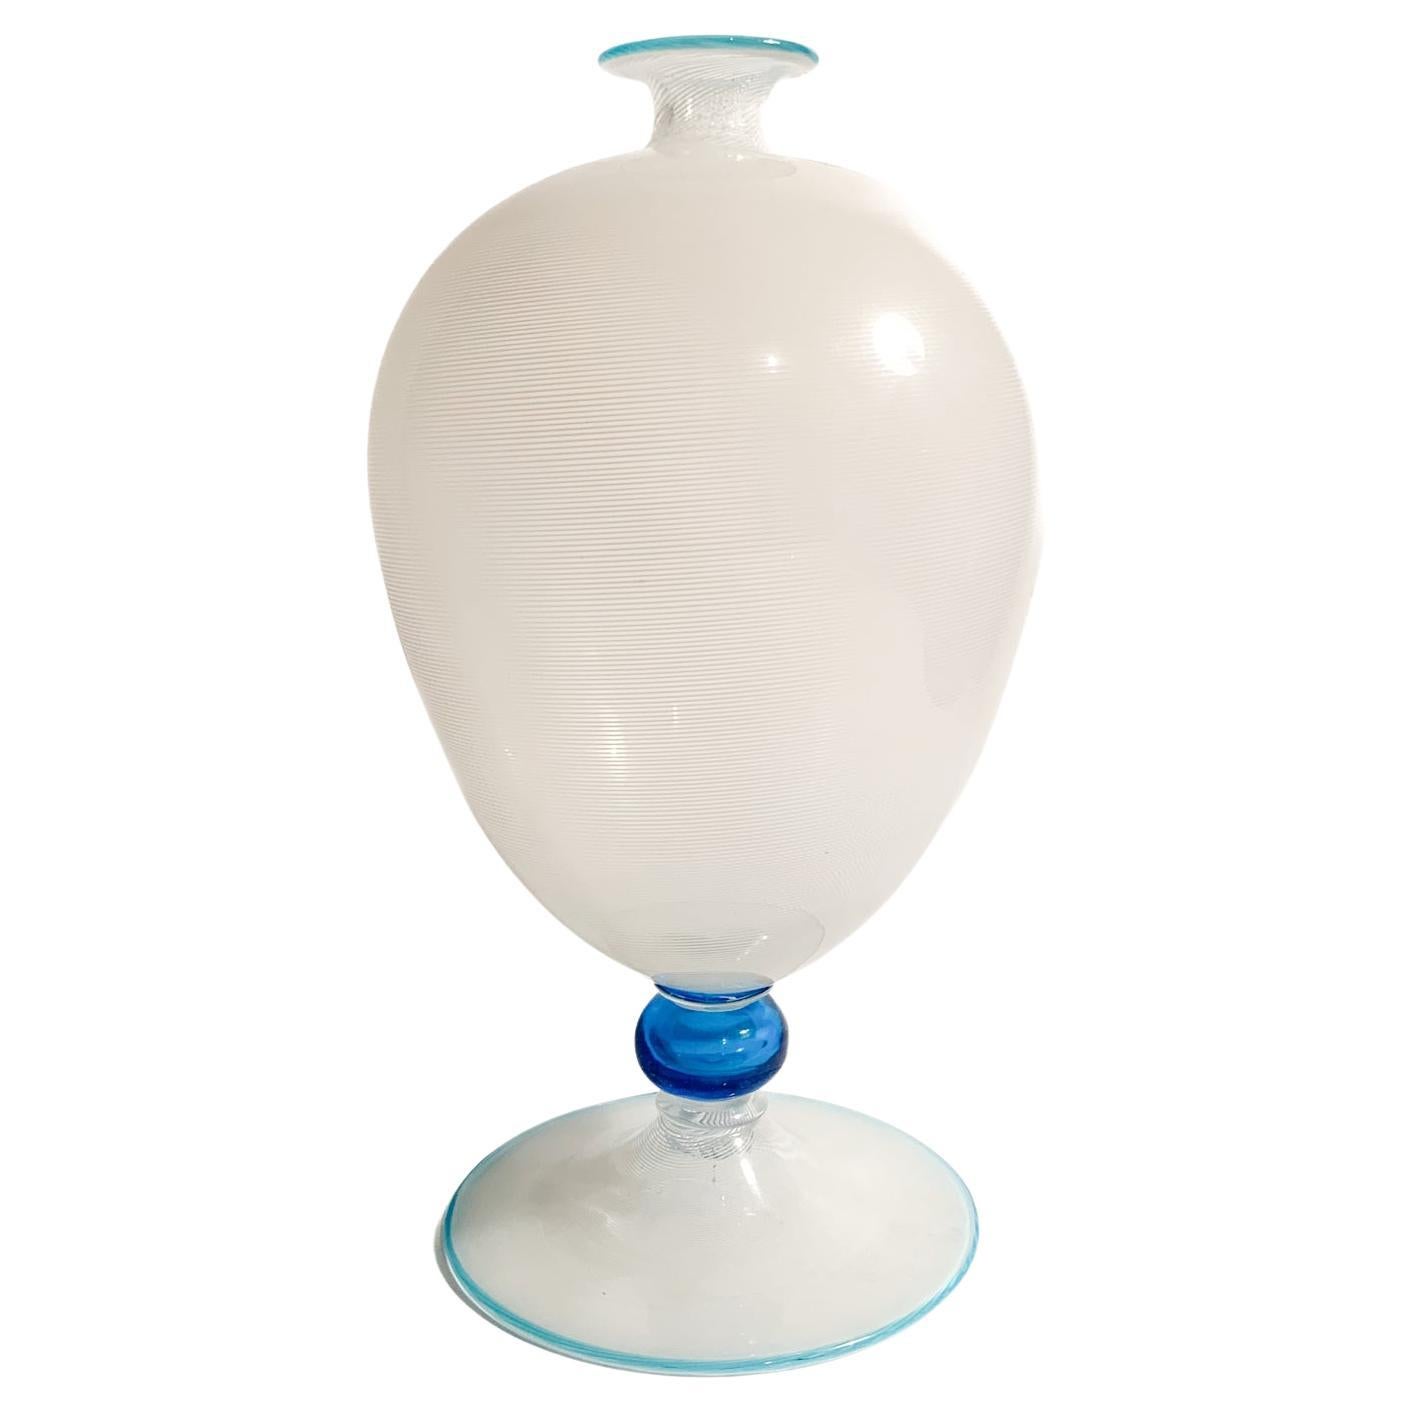 Veronese Model Filigree Vase in Murano Glass by Barovier & Toso, 1950s For Sale